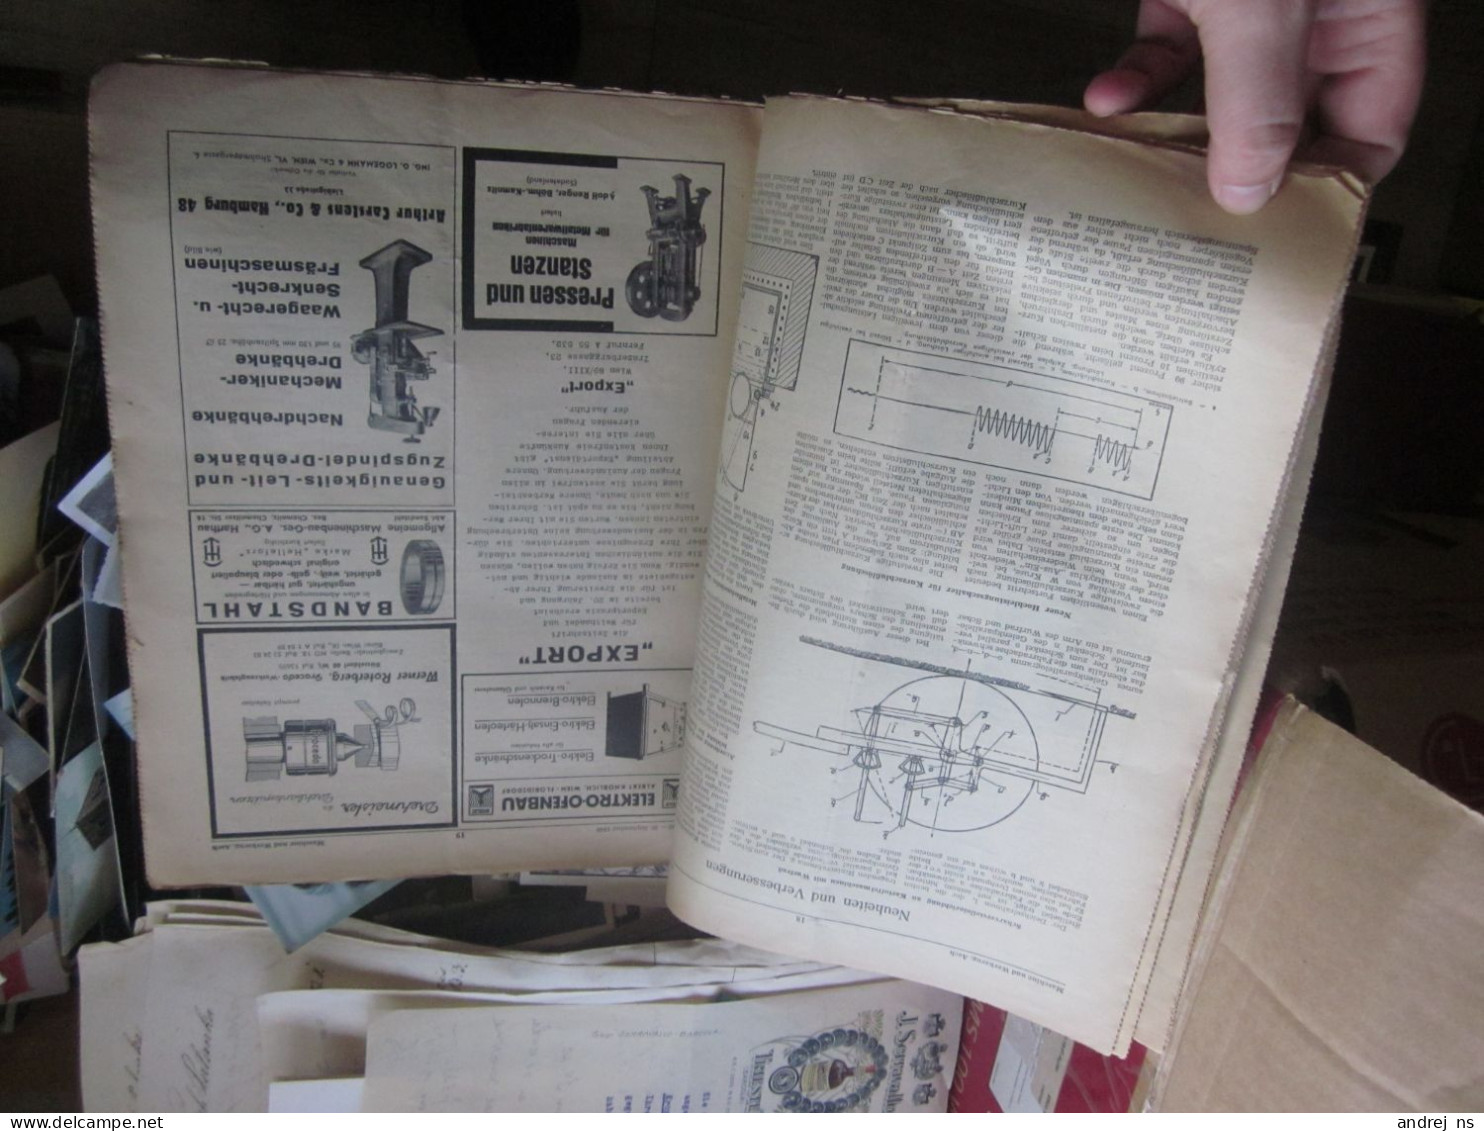 Maschine Und Werkzeug 1940 - Kataloge